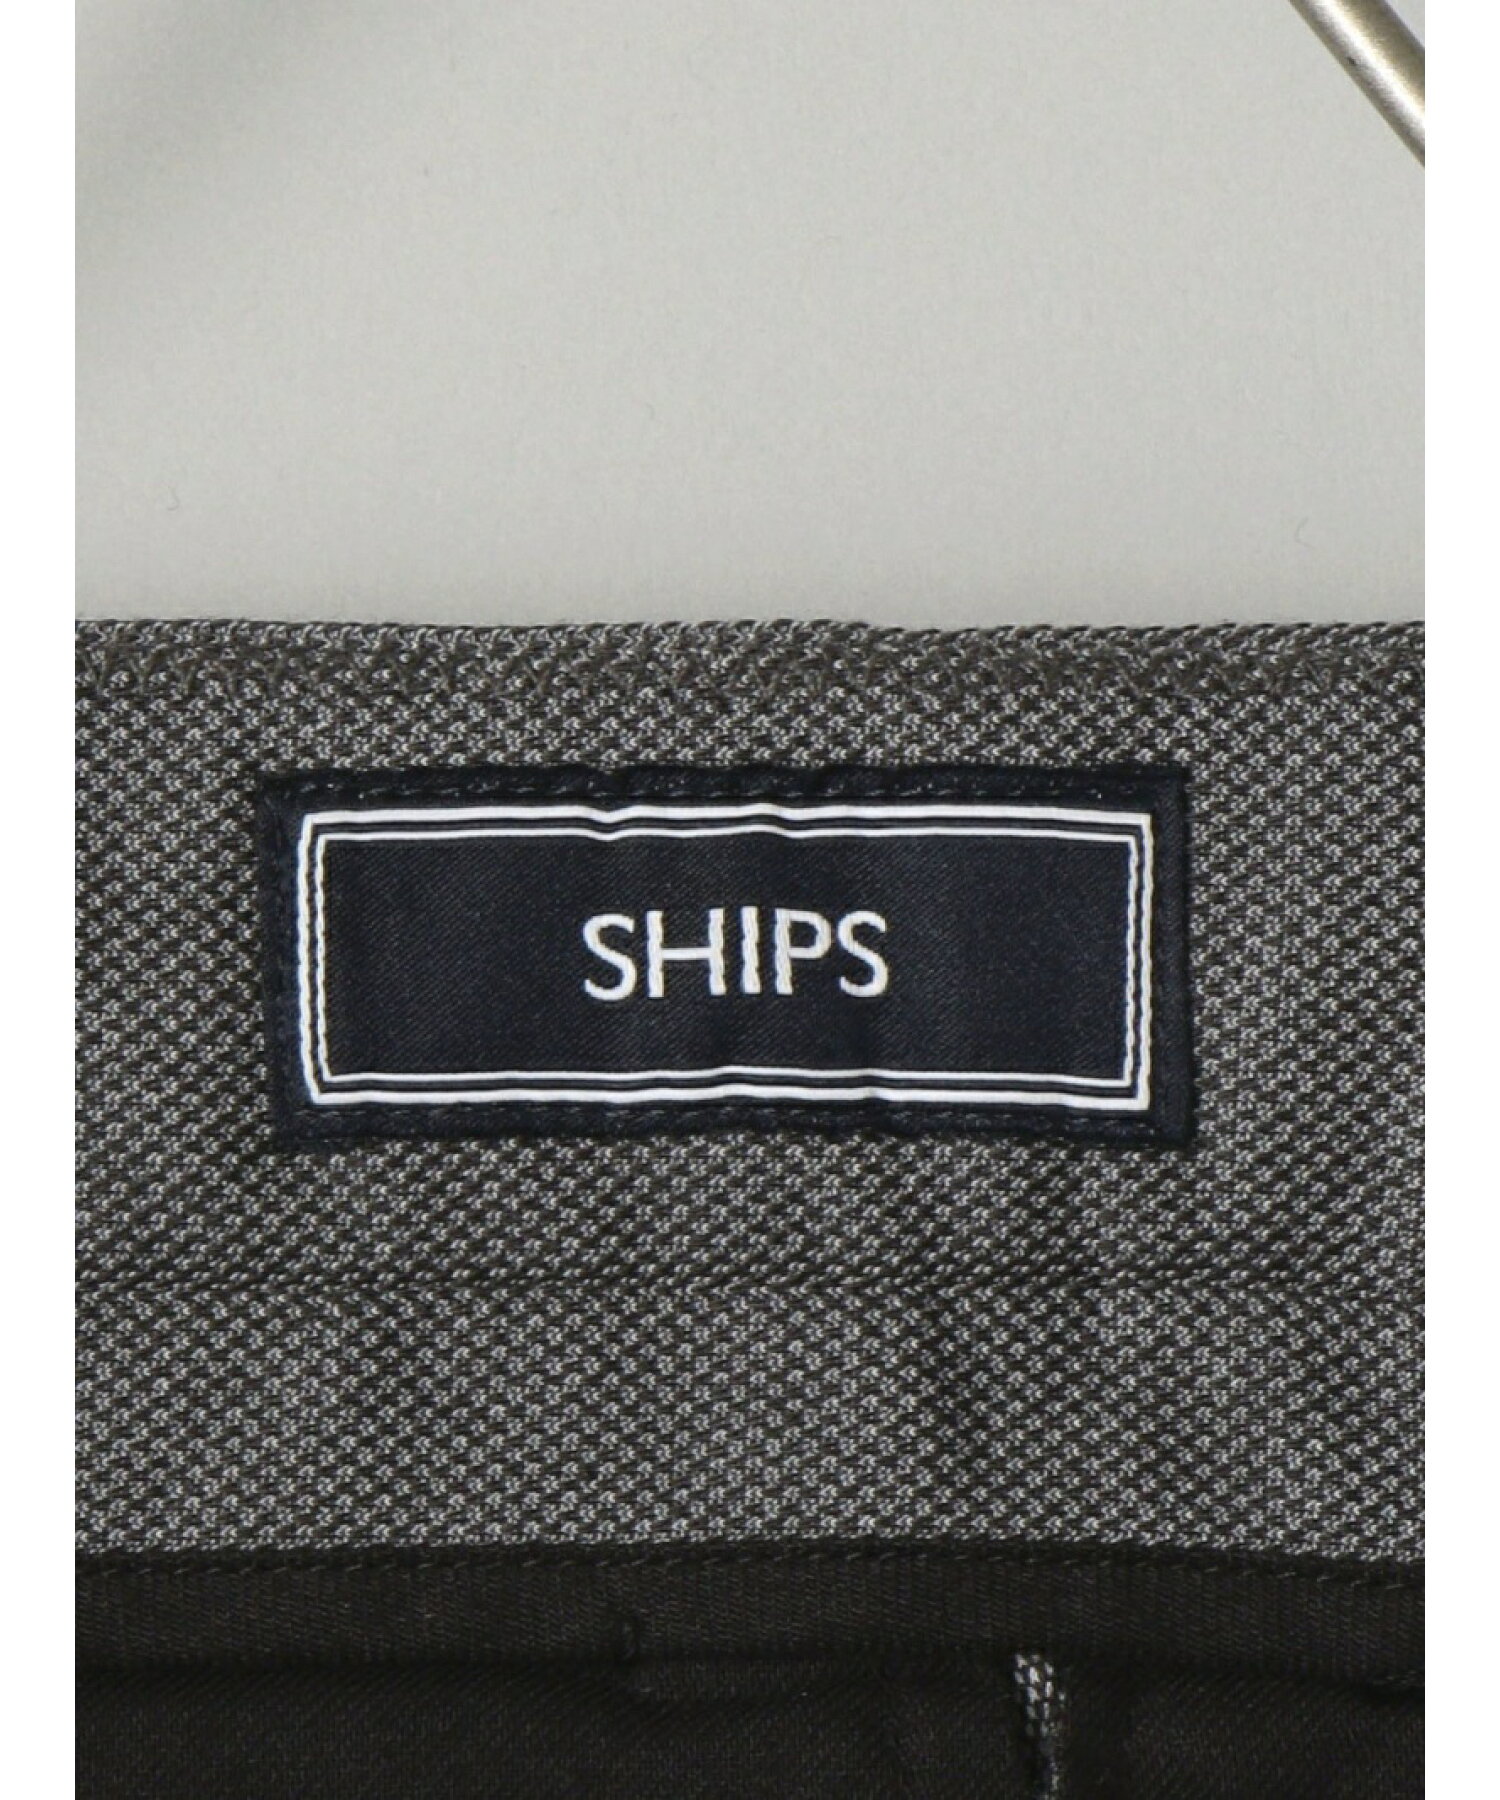 SHIPS:【ウエストアジャスト機能付き】 コットンポリエステル ジャージ ドビー スラックス